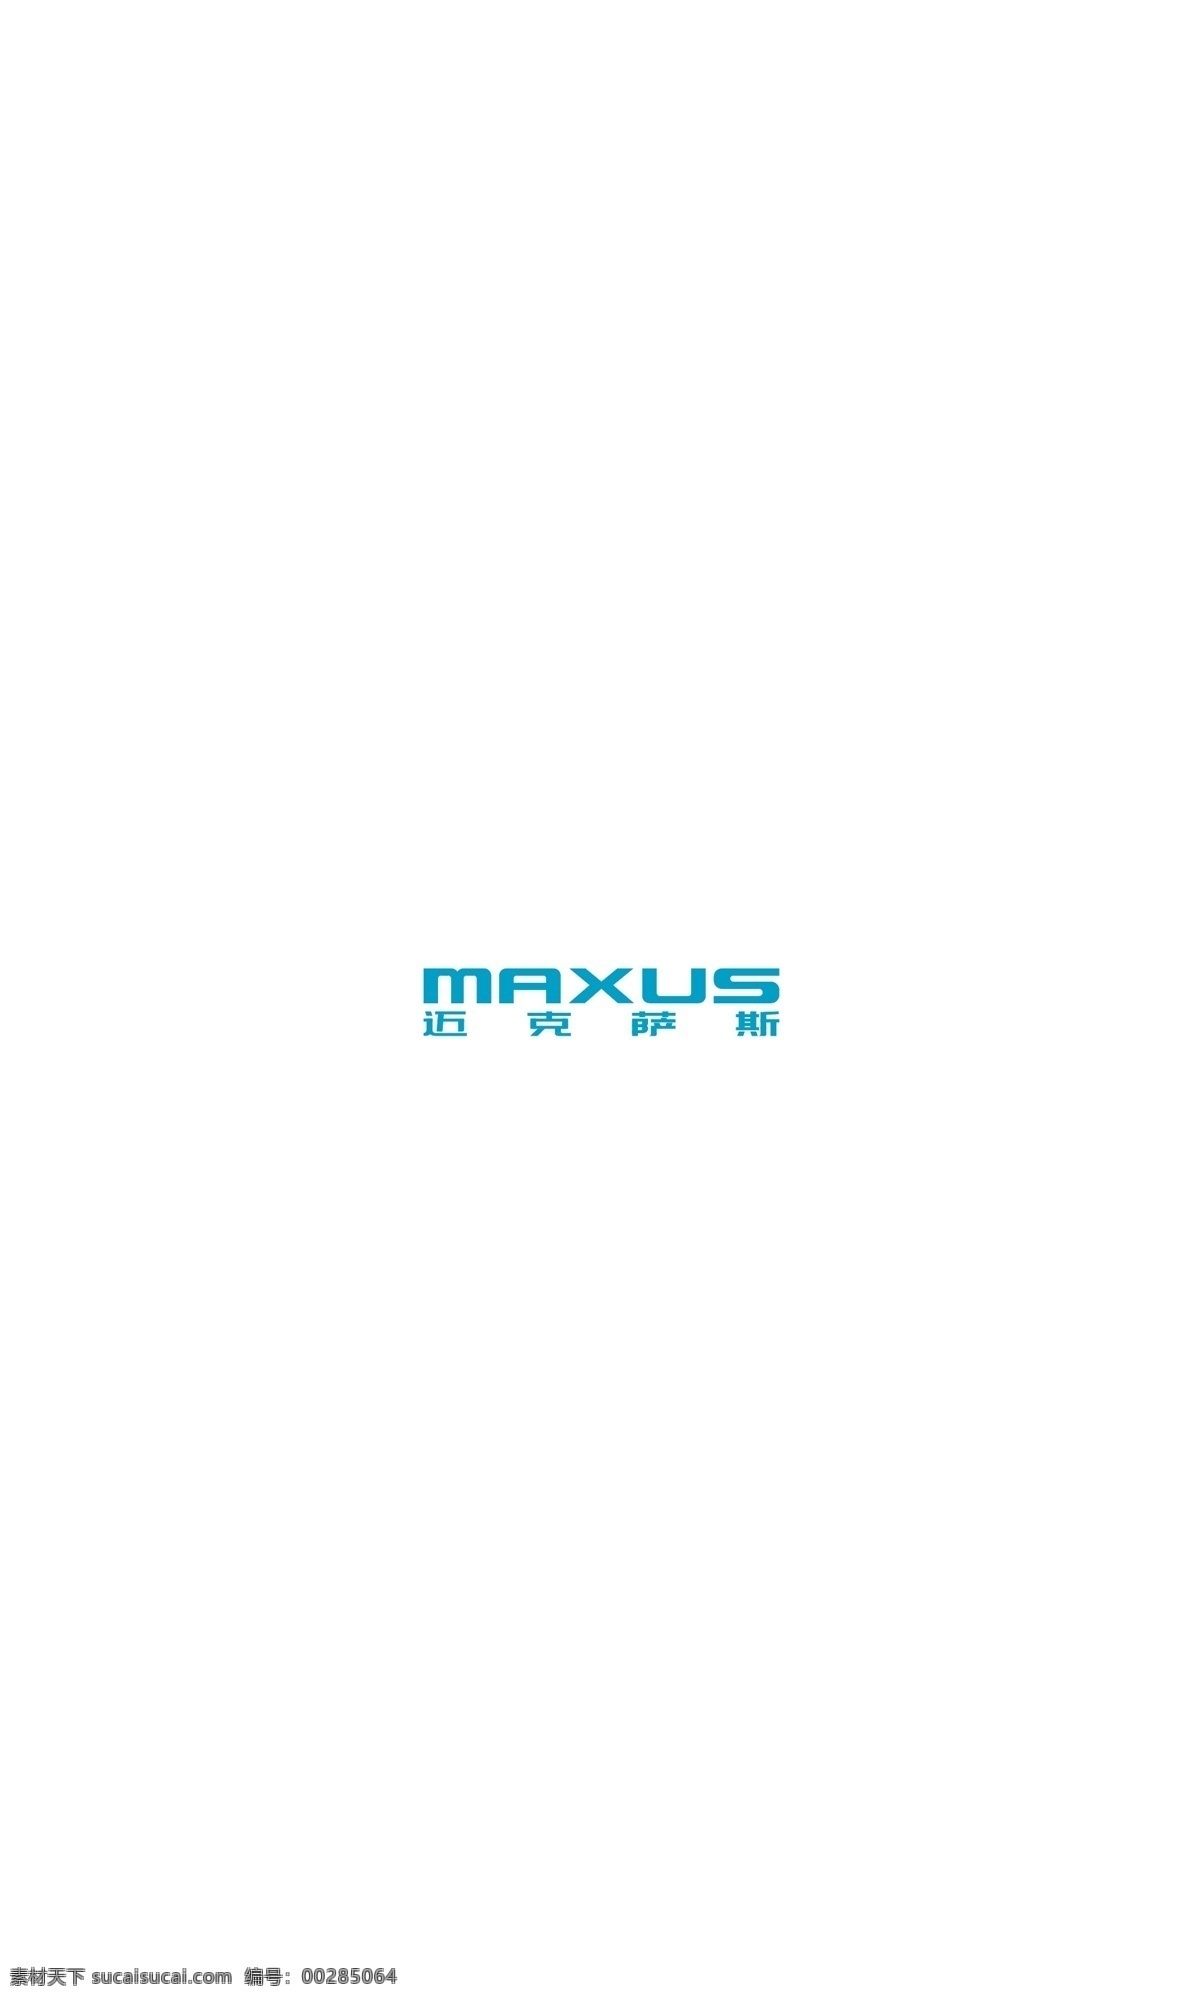 迈克 萨斯 logo maxus 迈克萨斯 标志图标 企业 标志